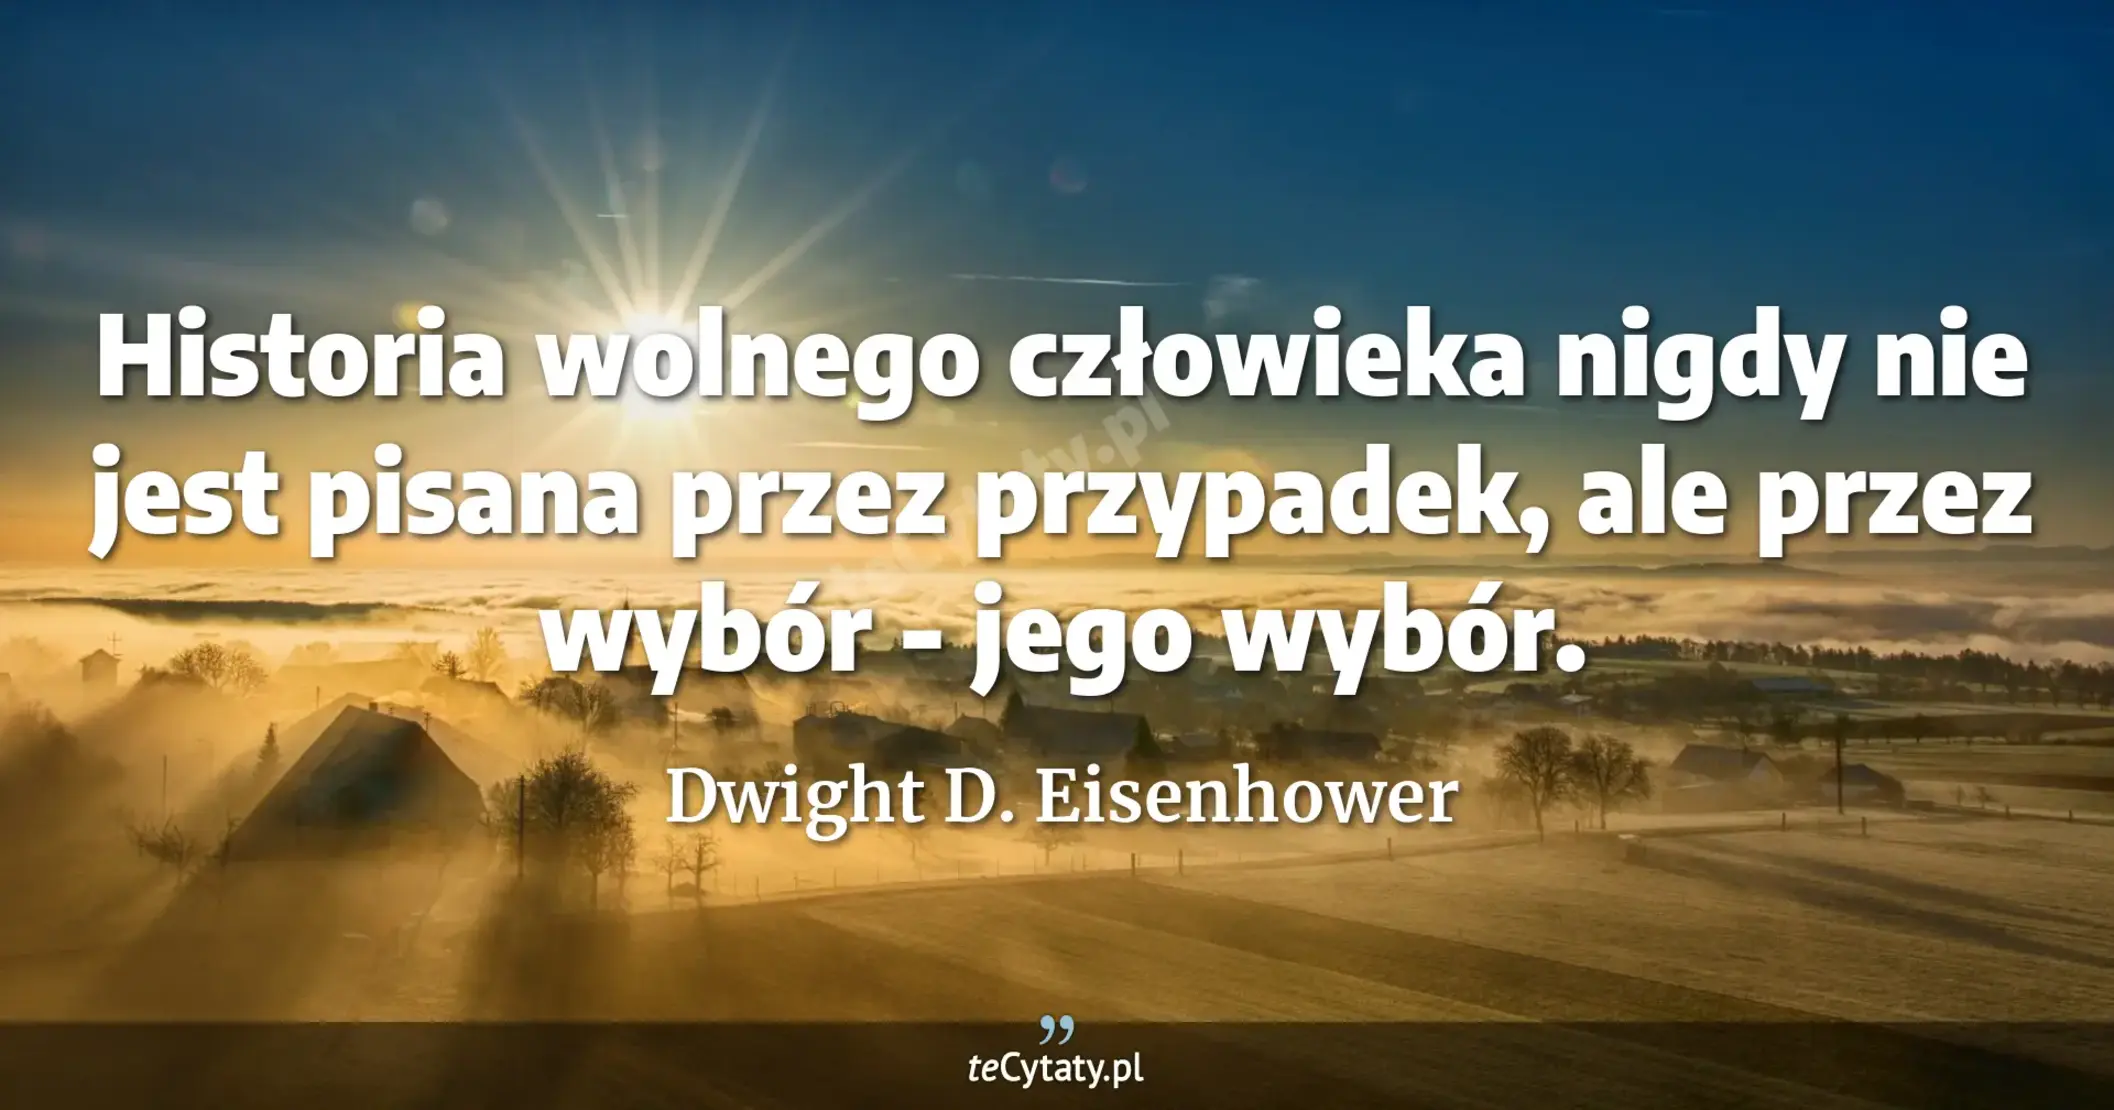 Historia wolnego człowieka nigdy nie jest pisana przez przypadek, ale przez wybór - jego wybór. - Dwight D. Eisenhower